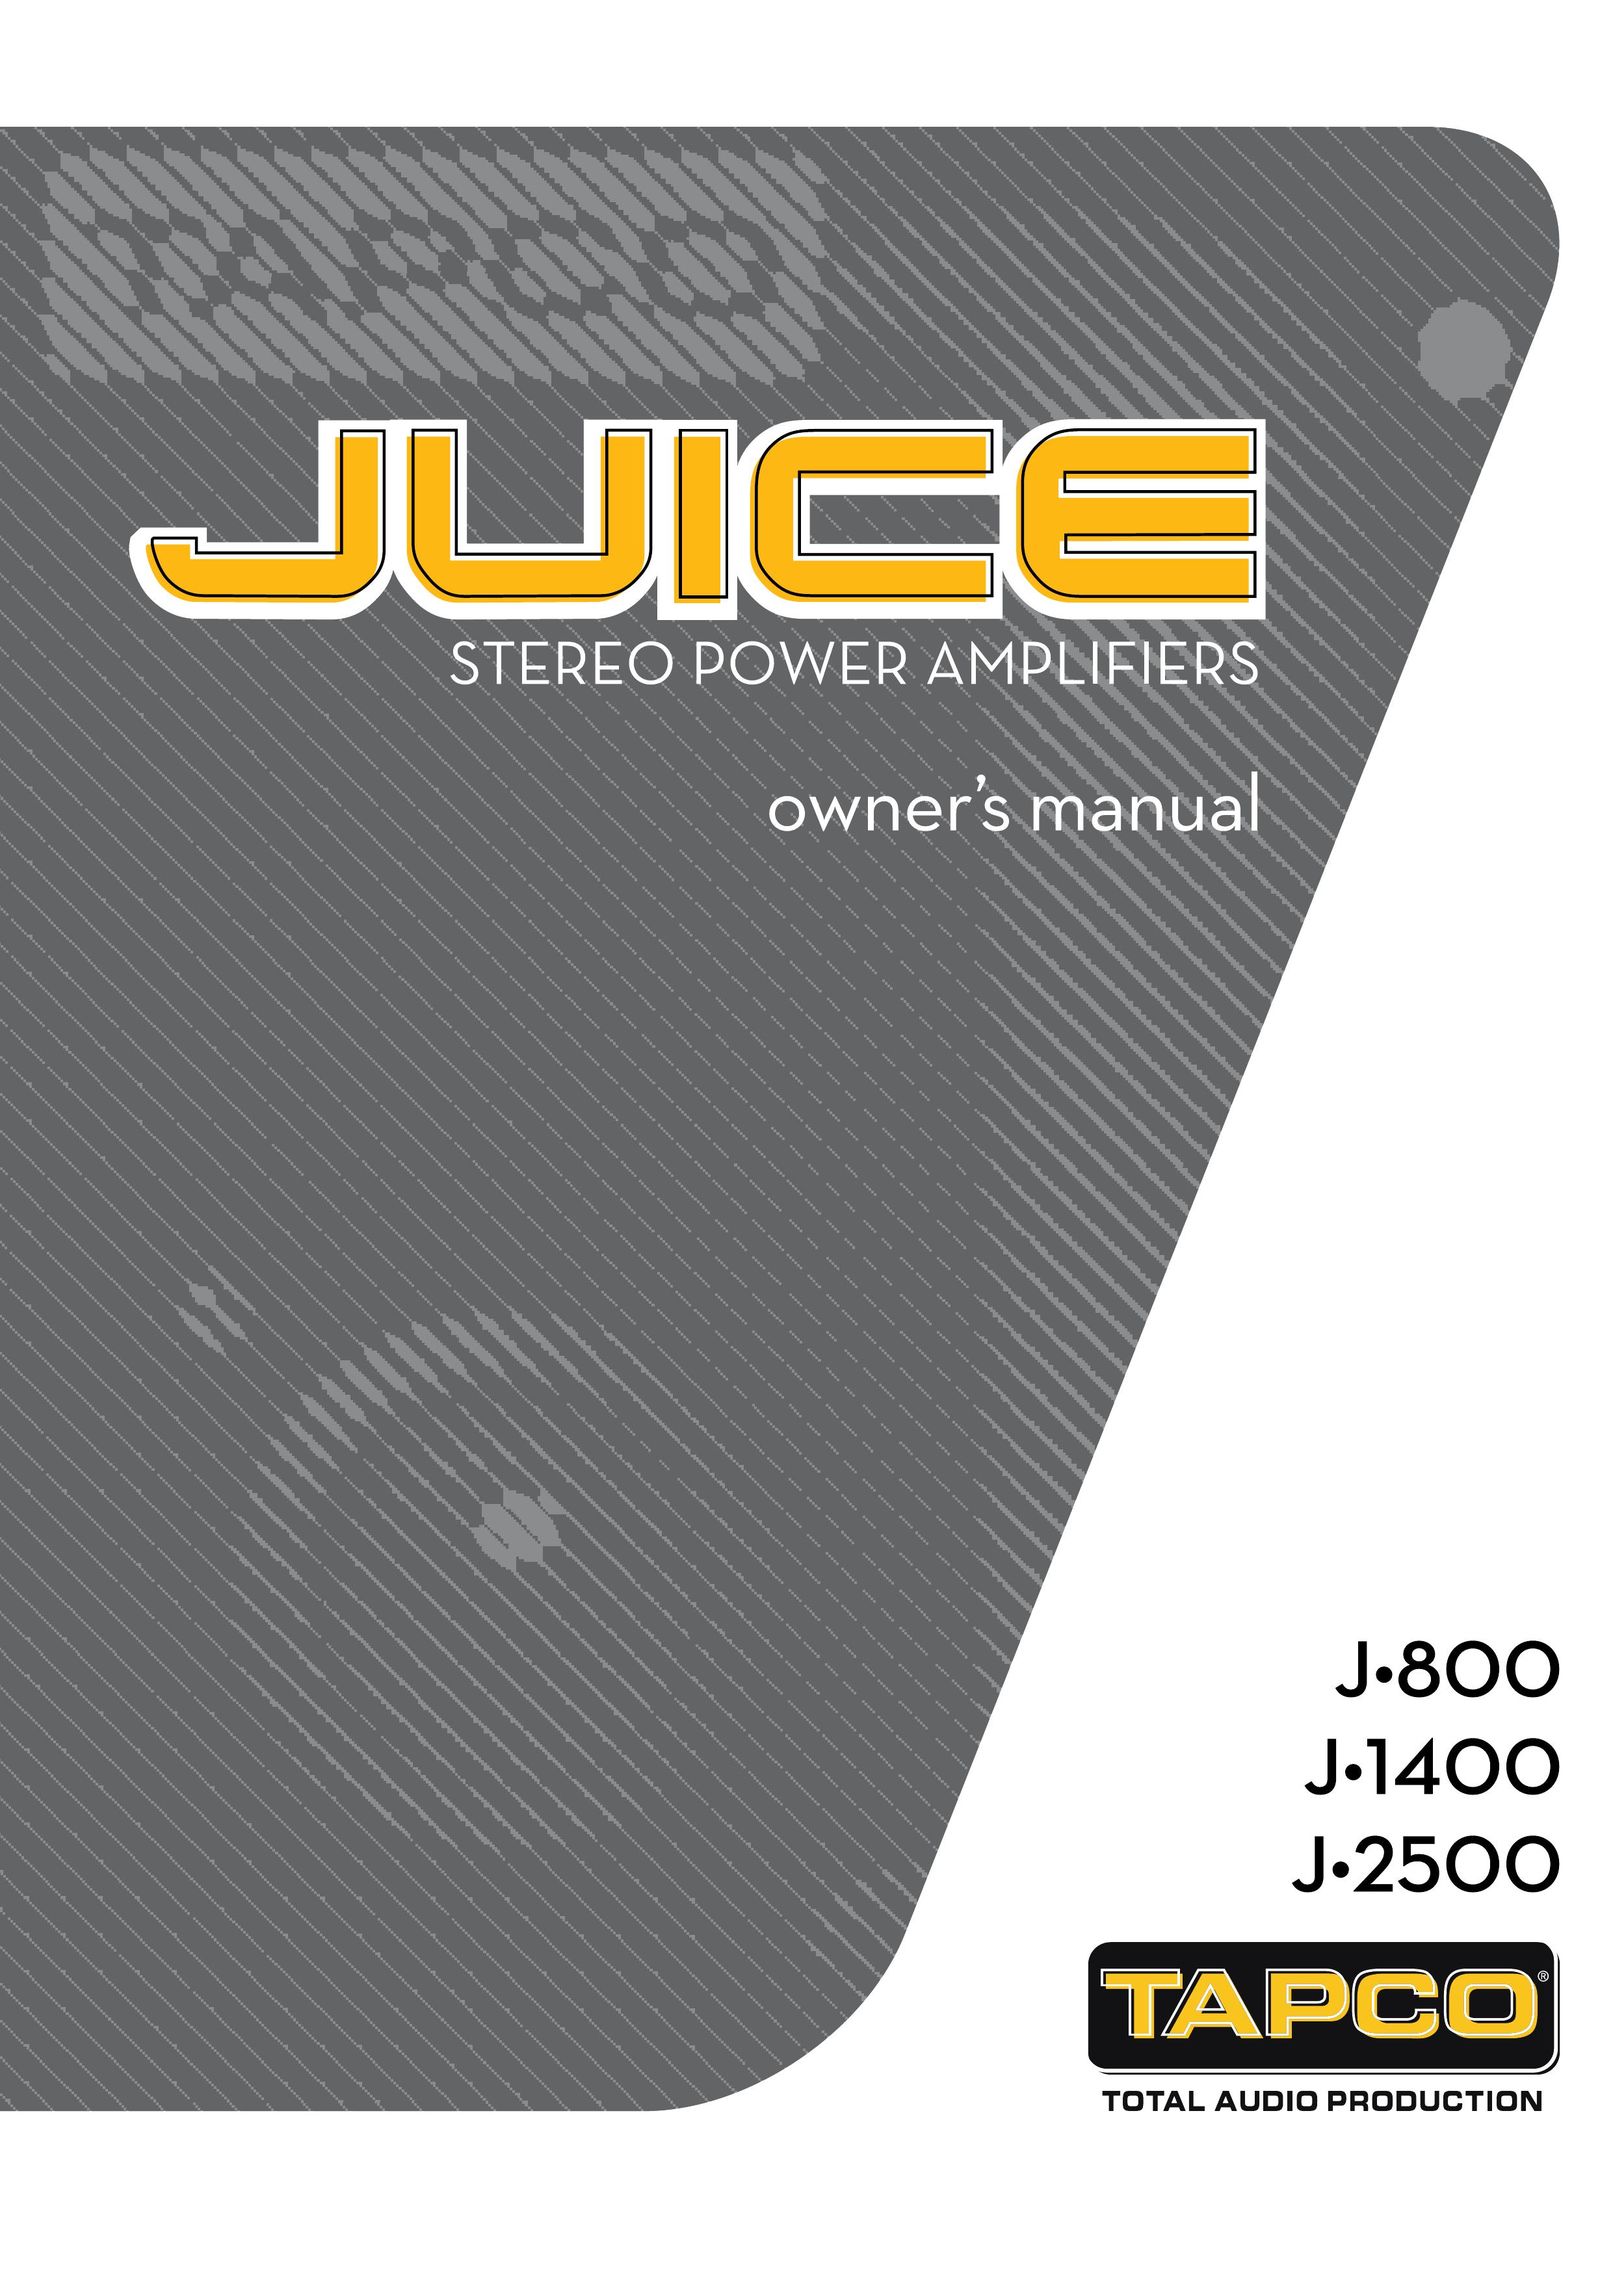 Tapco J-2500 Stereo Amplifier User Manual